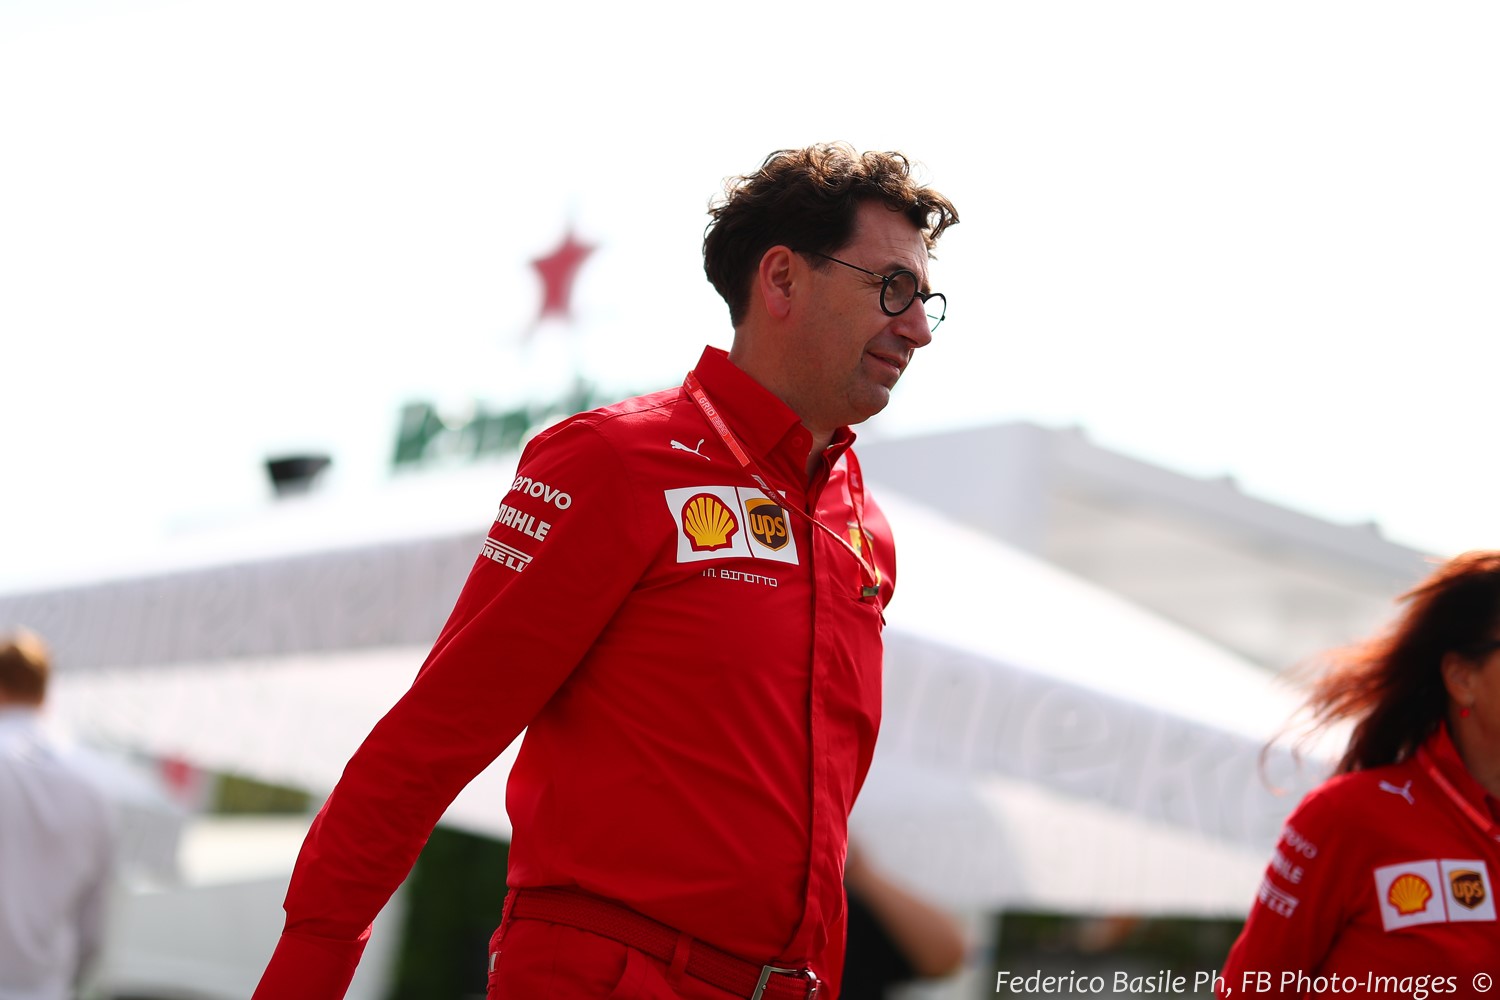 Binotto says Ferrari could veto 2021 rules